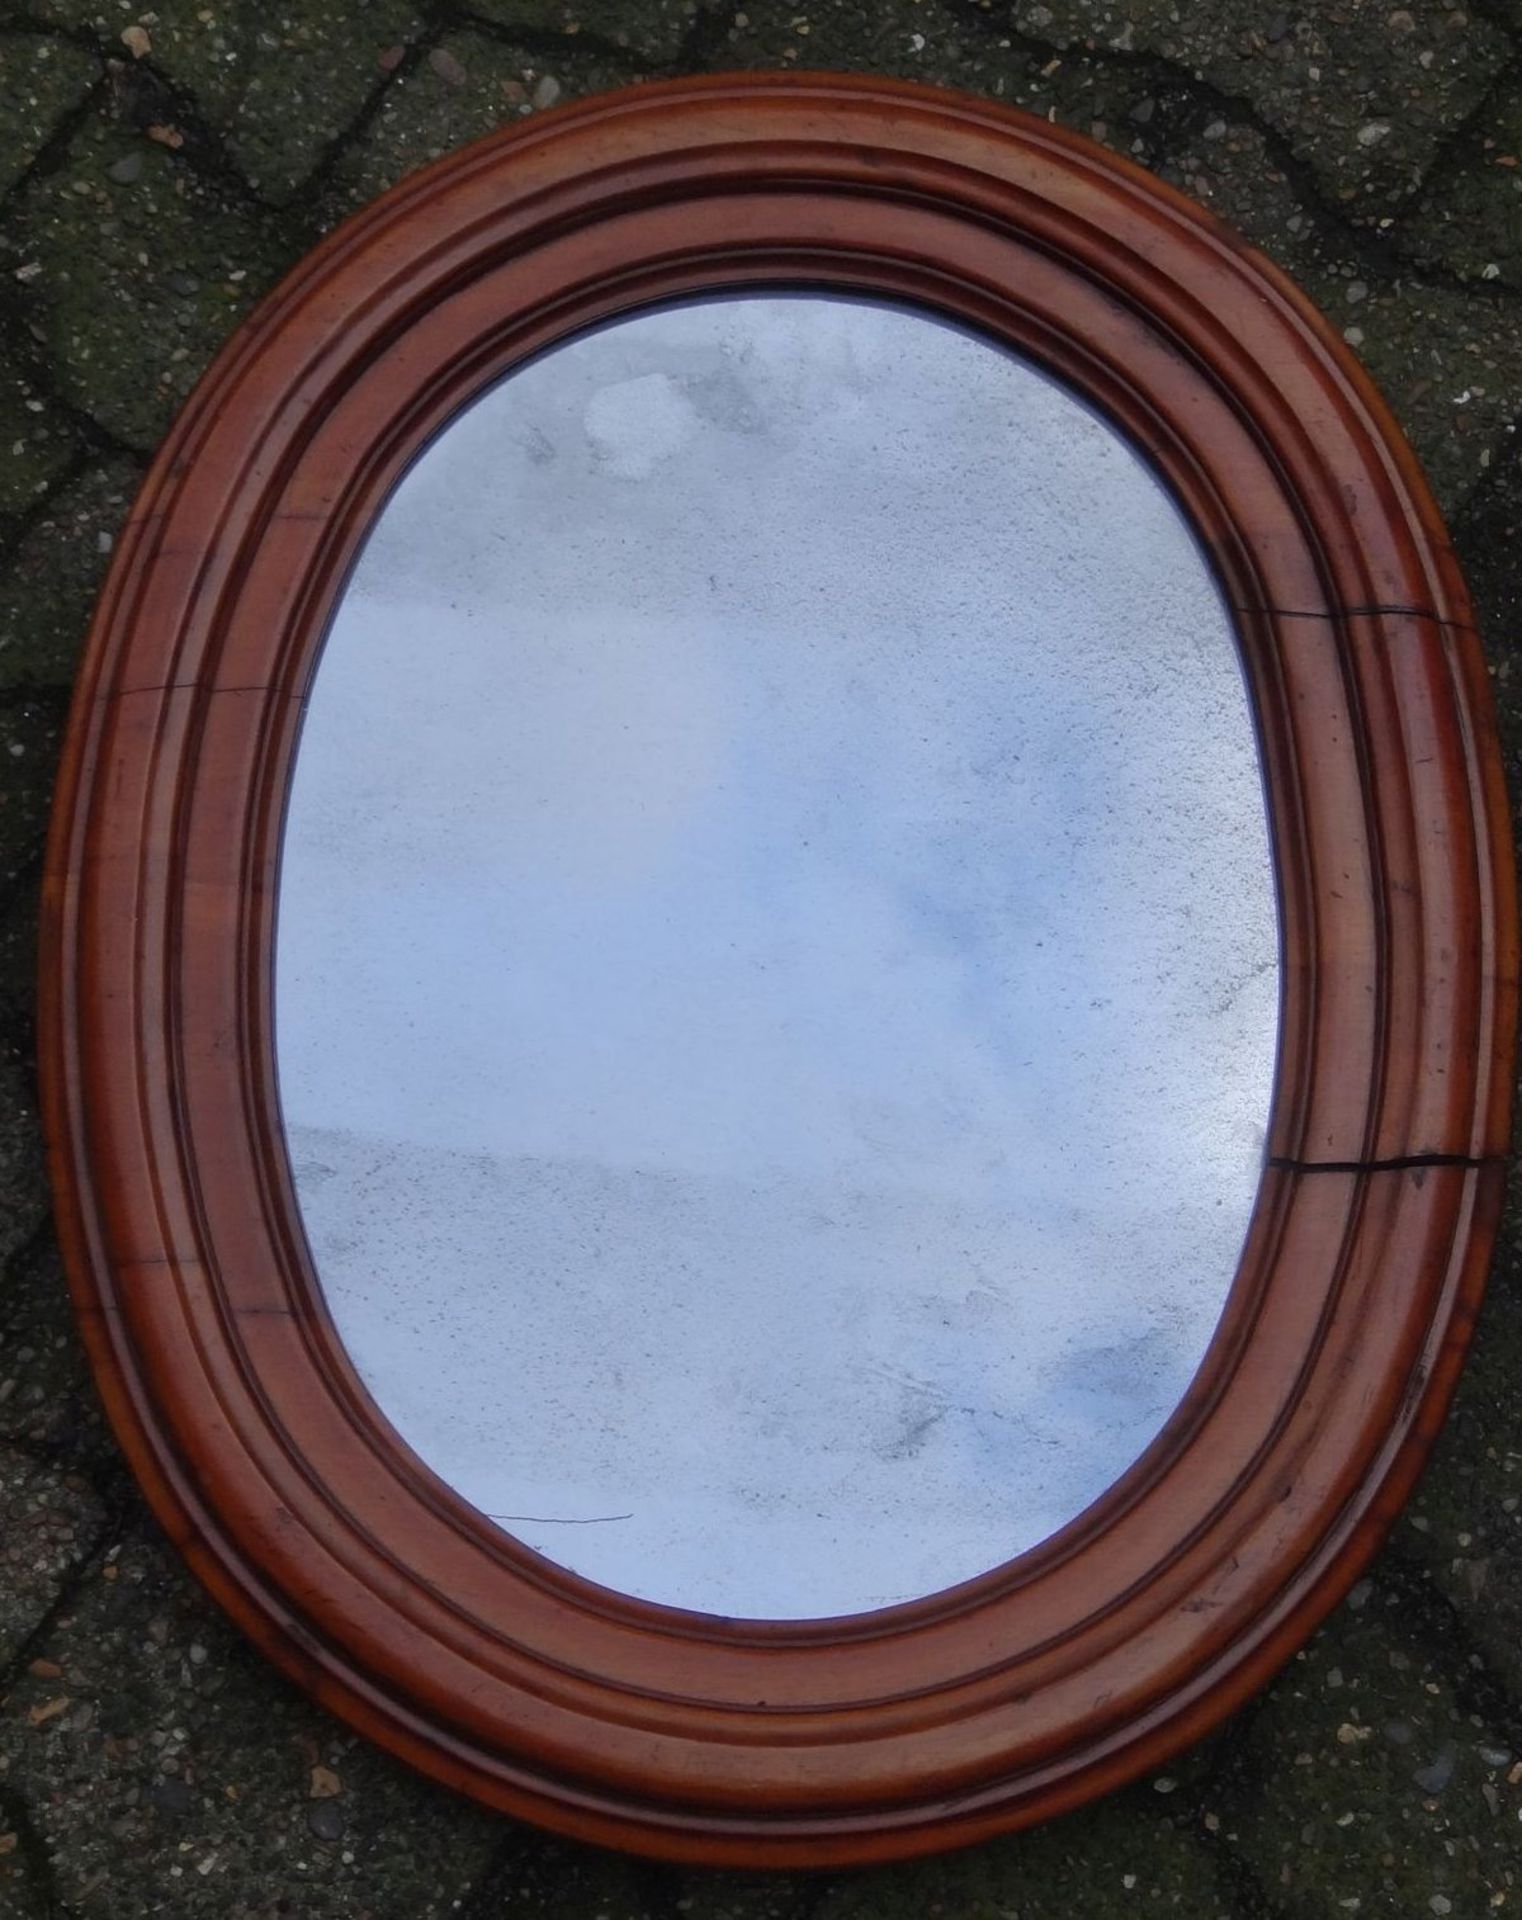 ovaler Wandspiegel mit breiten Holzrahmen, Spiegel fleckig, Rahmen überholungsbedürftig, 74x58 cm - Bild 3 aus 7